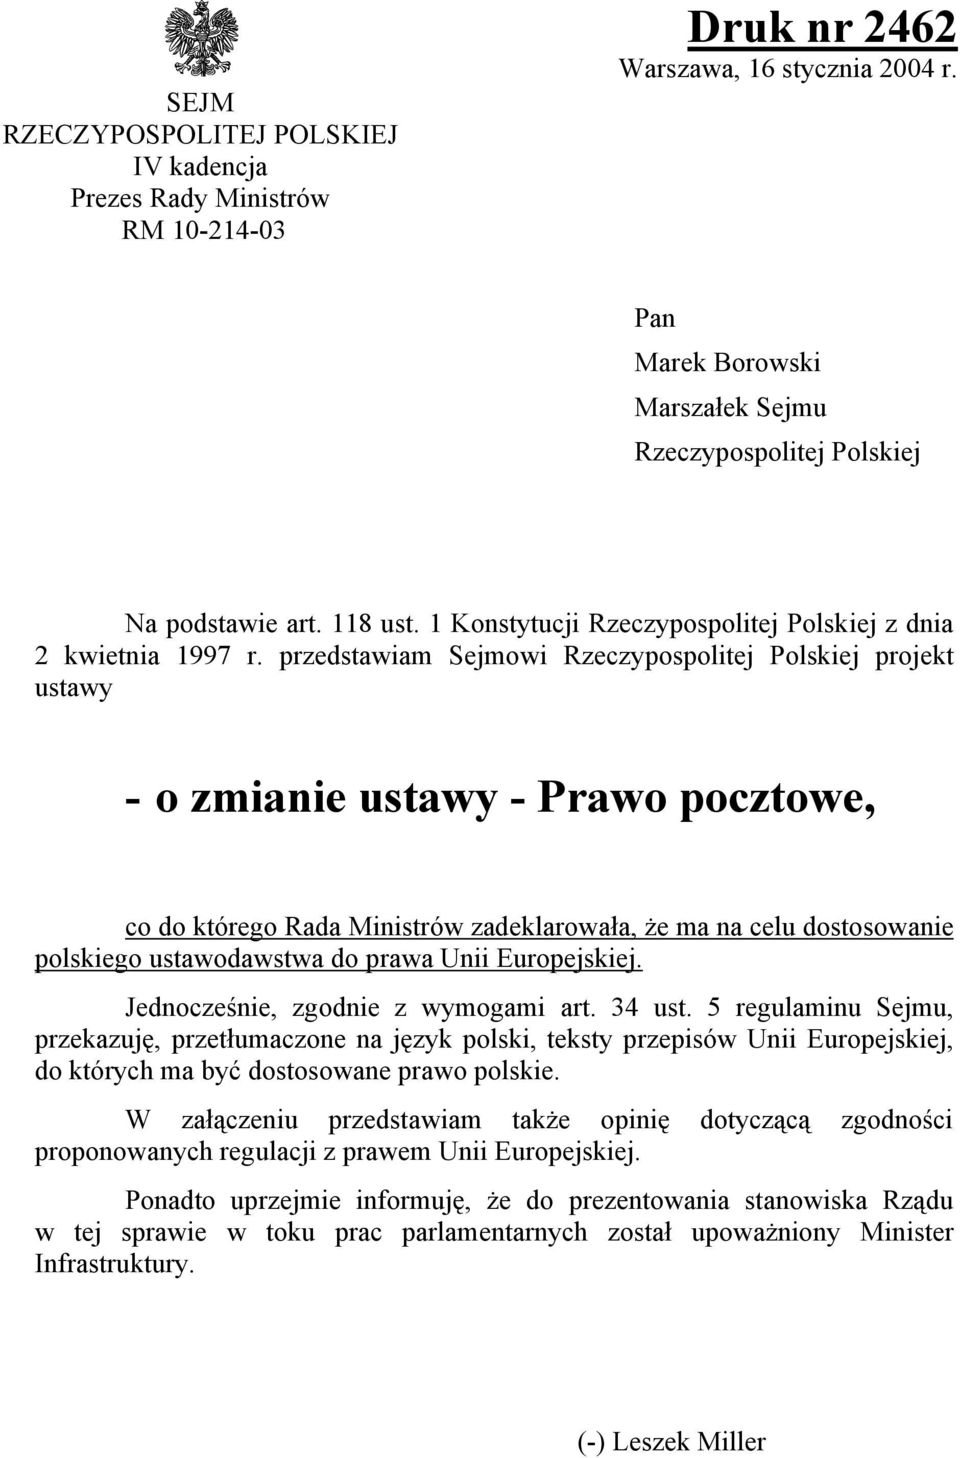 przedstawiam Sejmowi Rzeczypospolitej Polskiej projekt ustawy - o zmianie ustawy - Prawo pocztowe, co do którego Rada Ministrów zadeklarowała, że ma na celu dostosowanie polskiego ustawodawstwa do